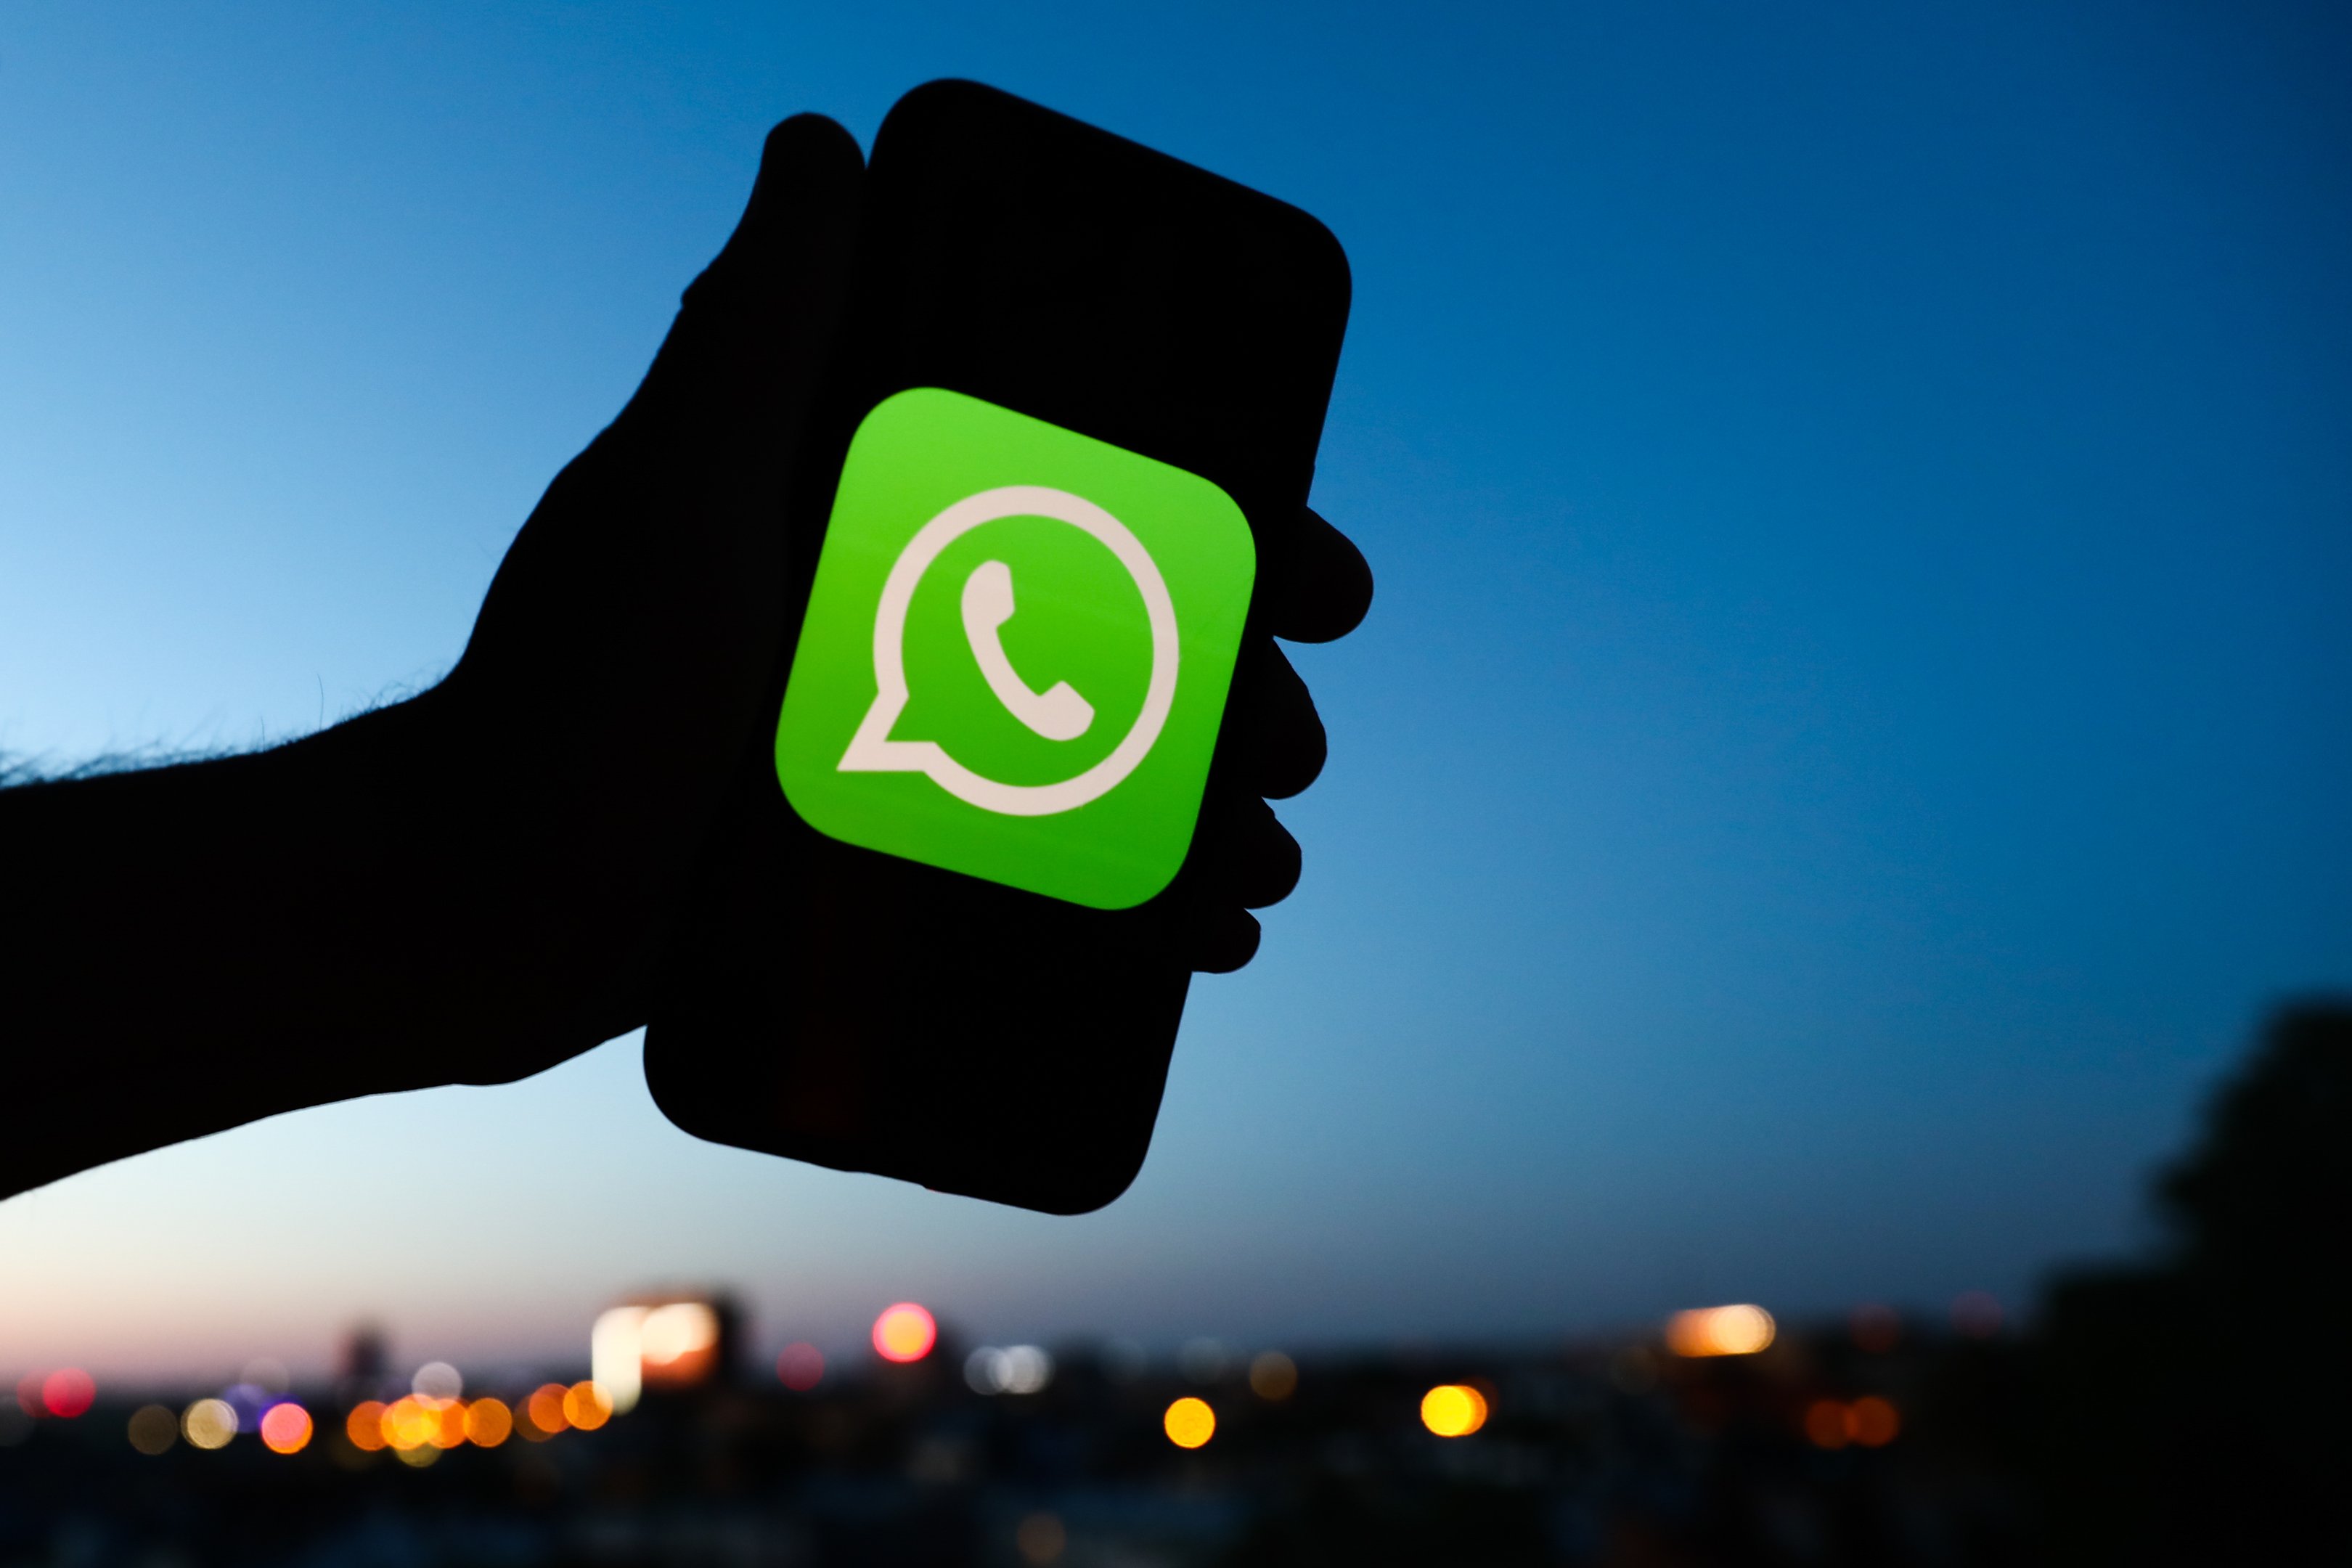  WhatsApp: 3 dolda funktioner som kommer att revolutionera din upplevelse!